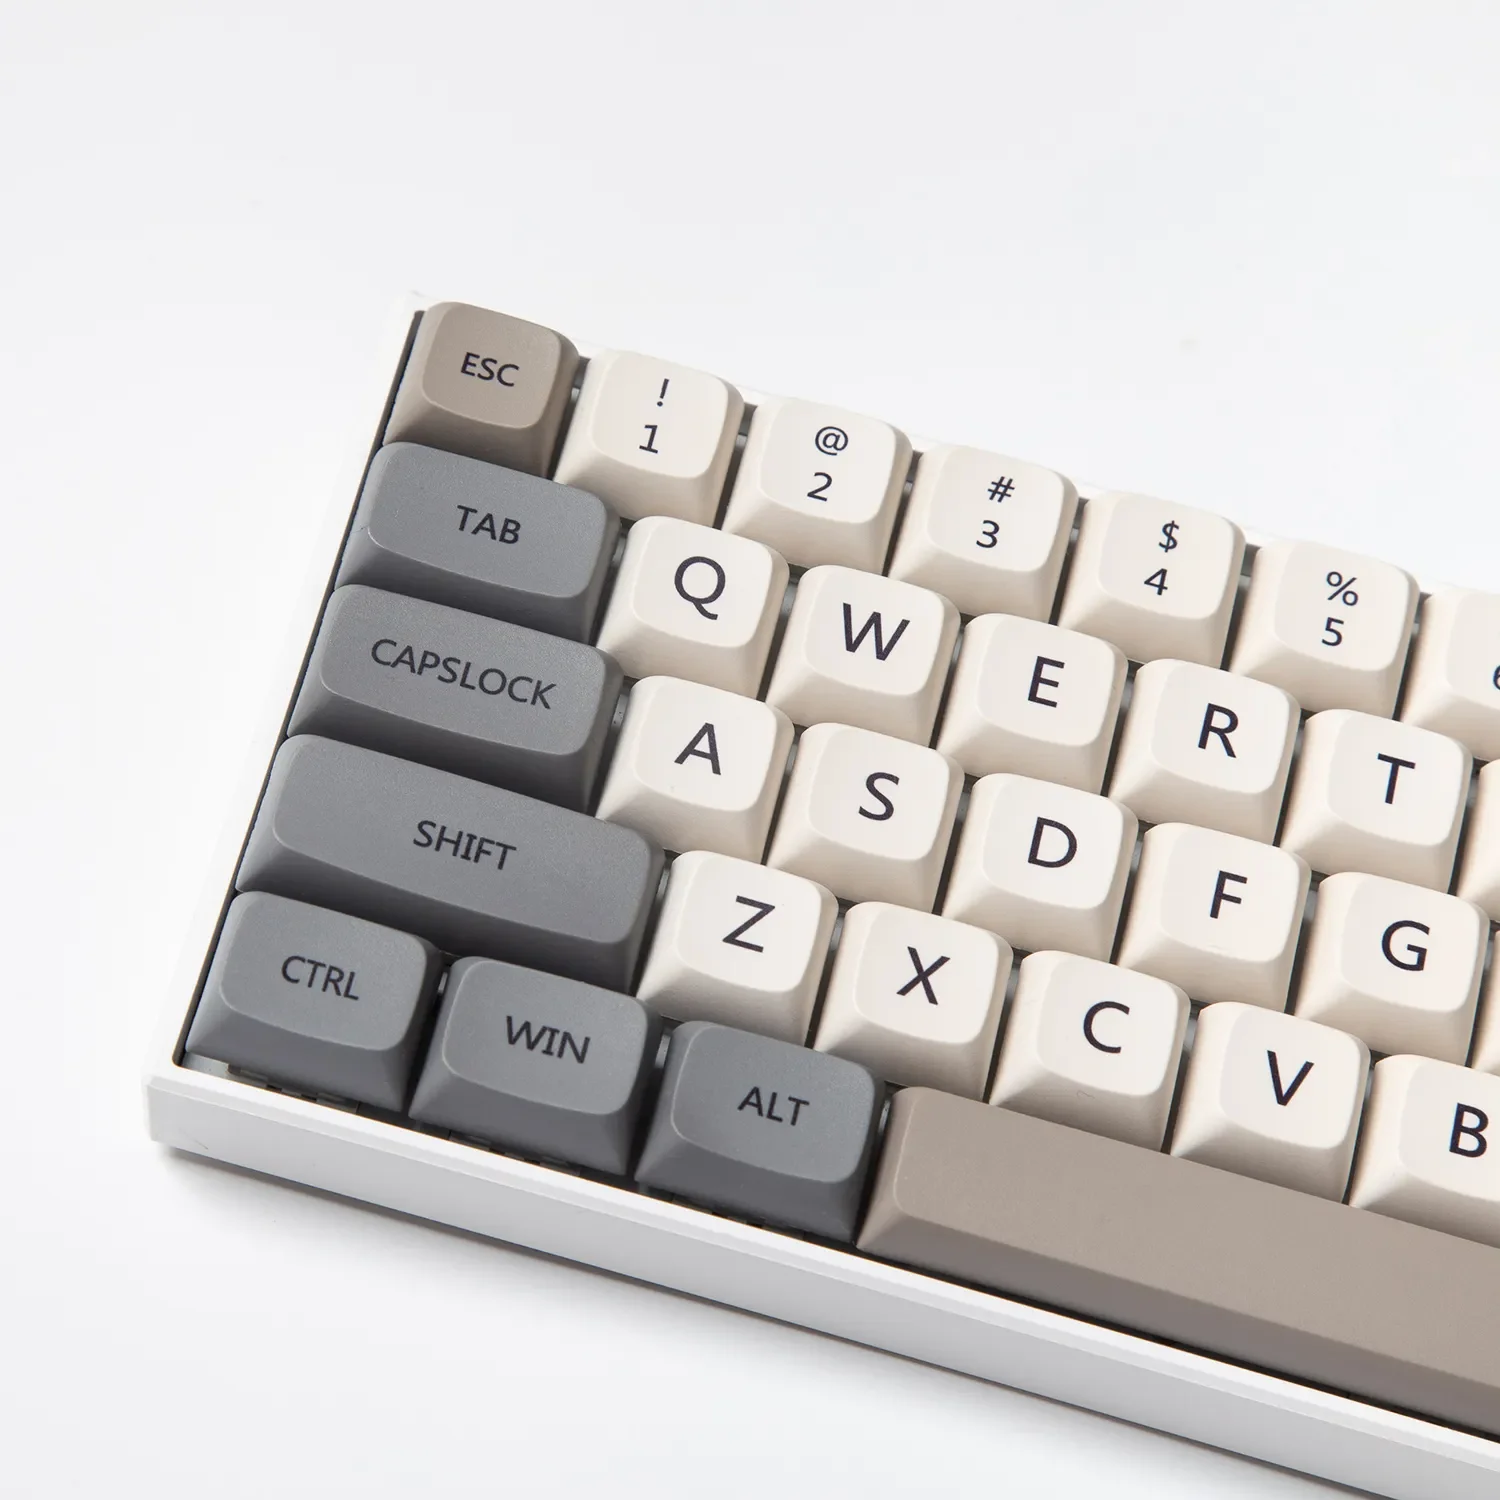 

Профиль 120 PBT Keycap DYE-SUB персонализированный минималистичный белый серый английский японский Keycap для механической клавиатуры MX Switch